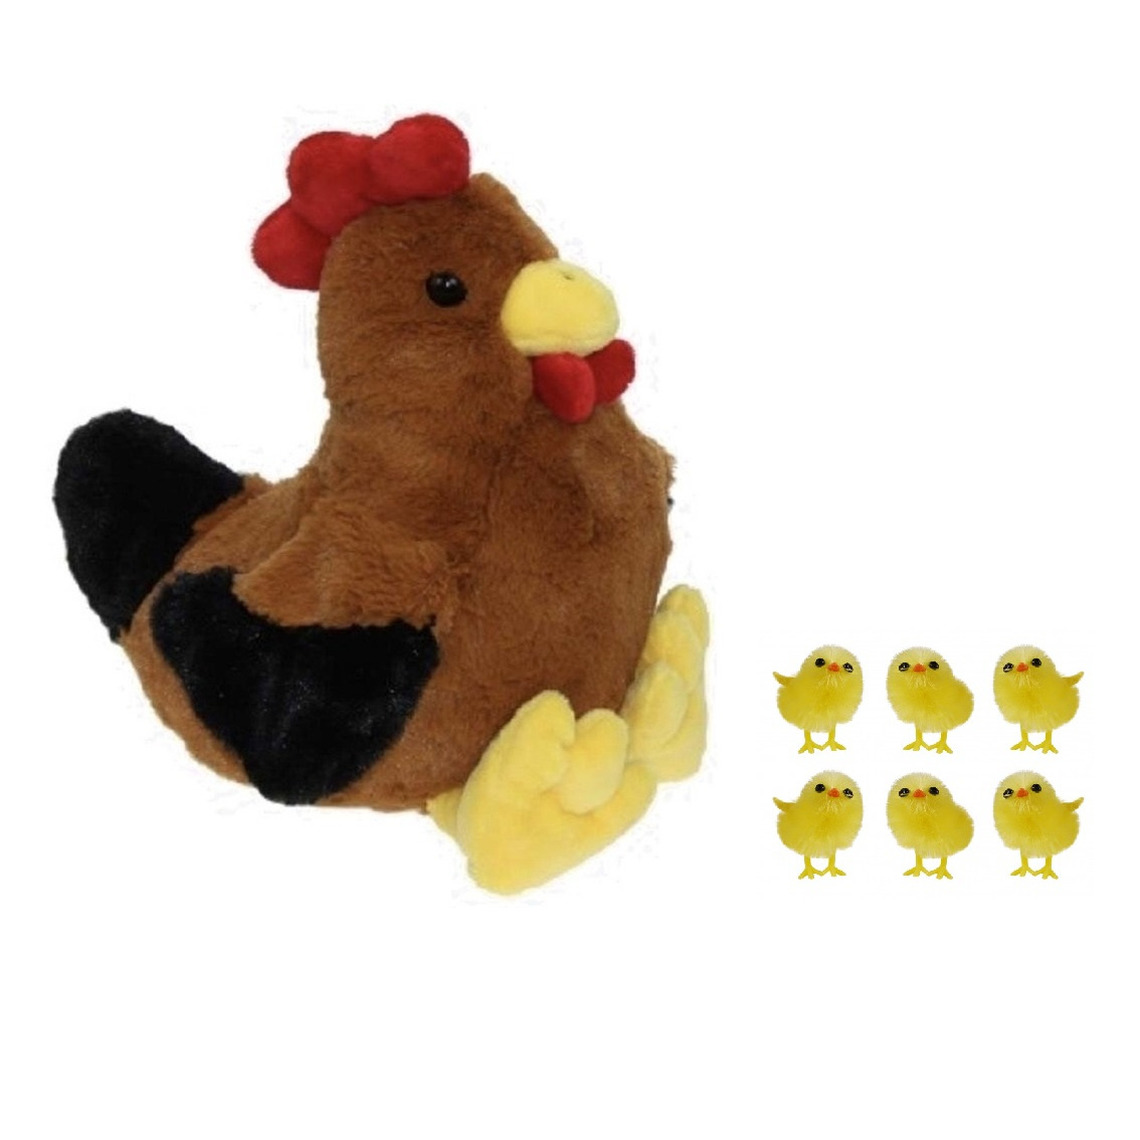 Pluche bruine kippen-hanen knuffel van 25 cm met 6x stuks mini kuikentjes 3,5 cm